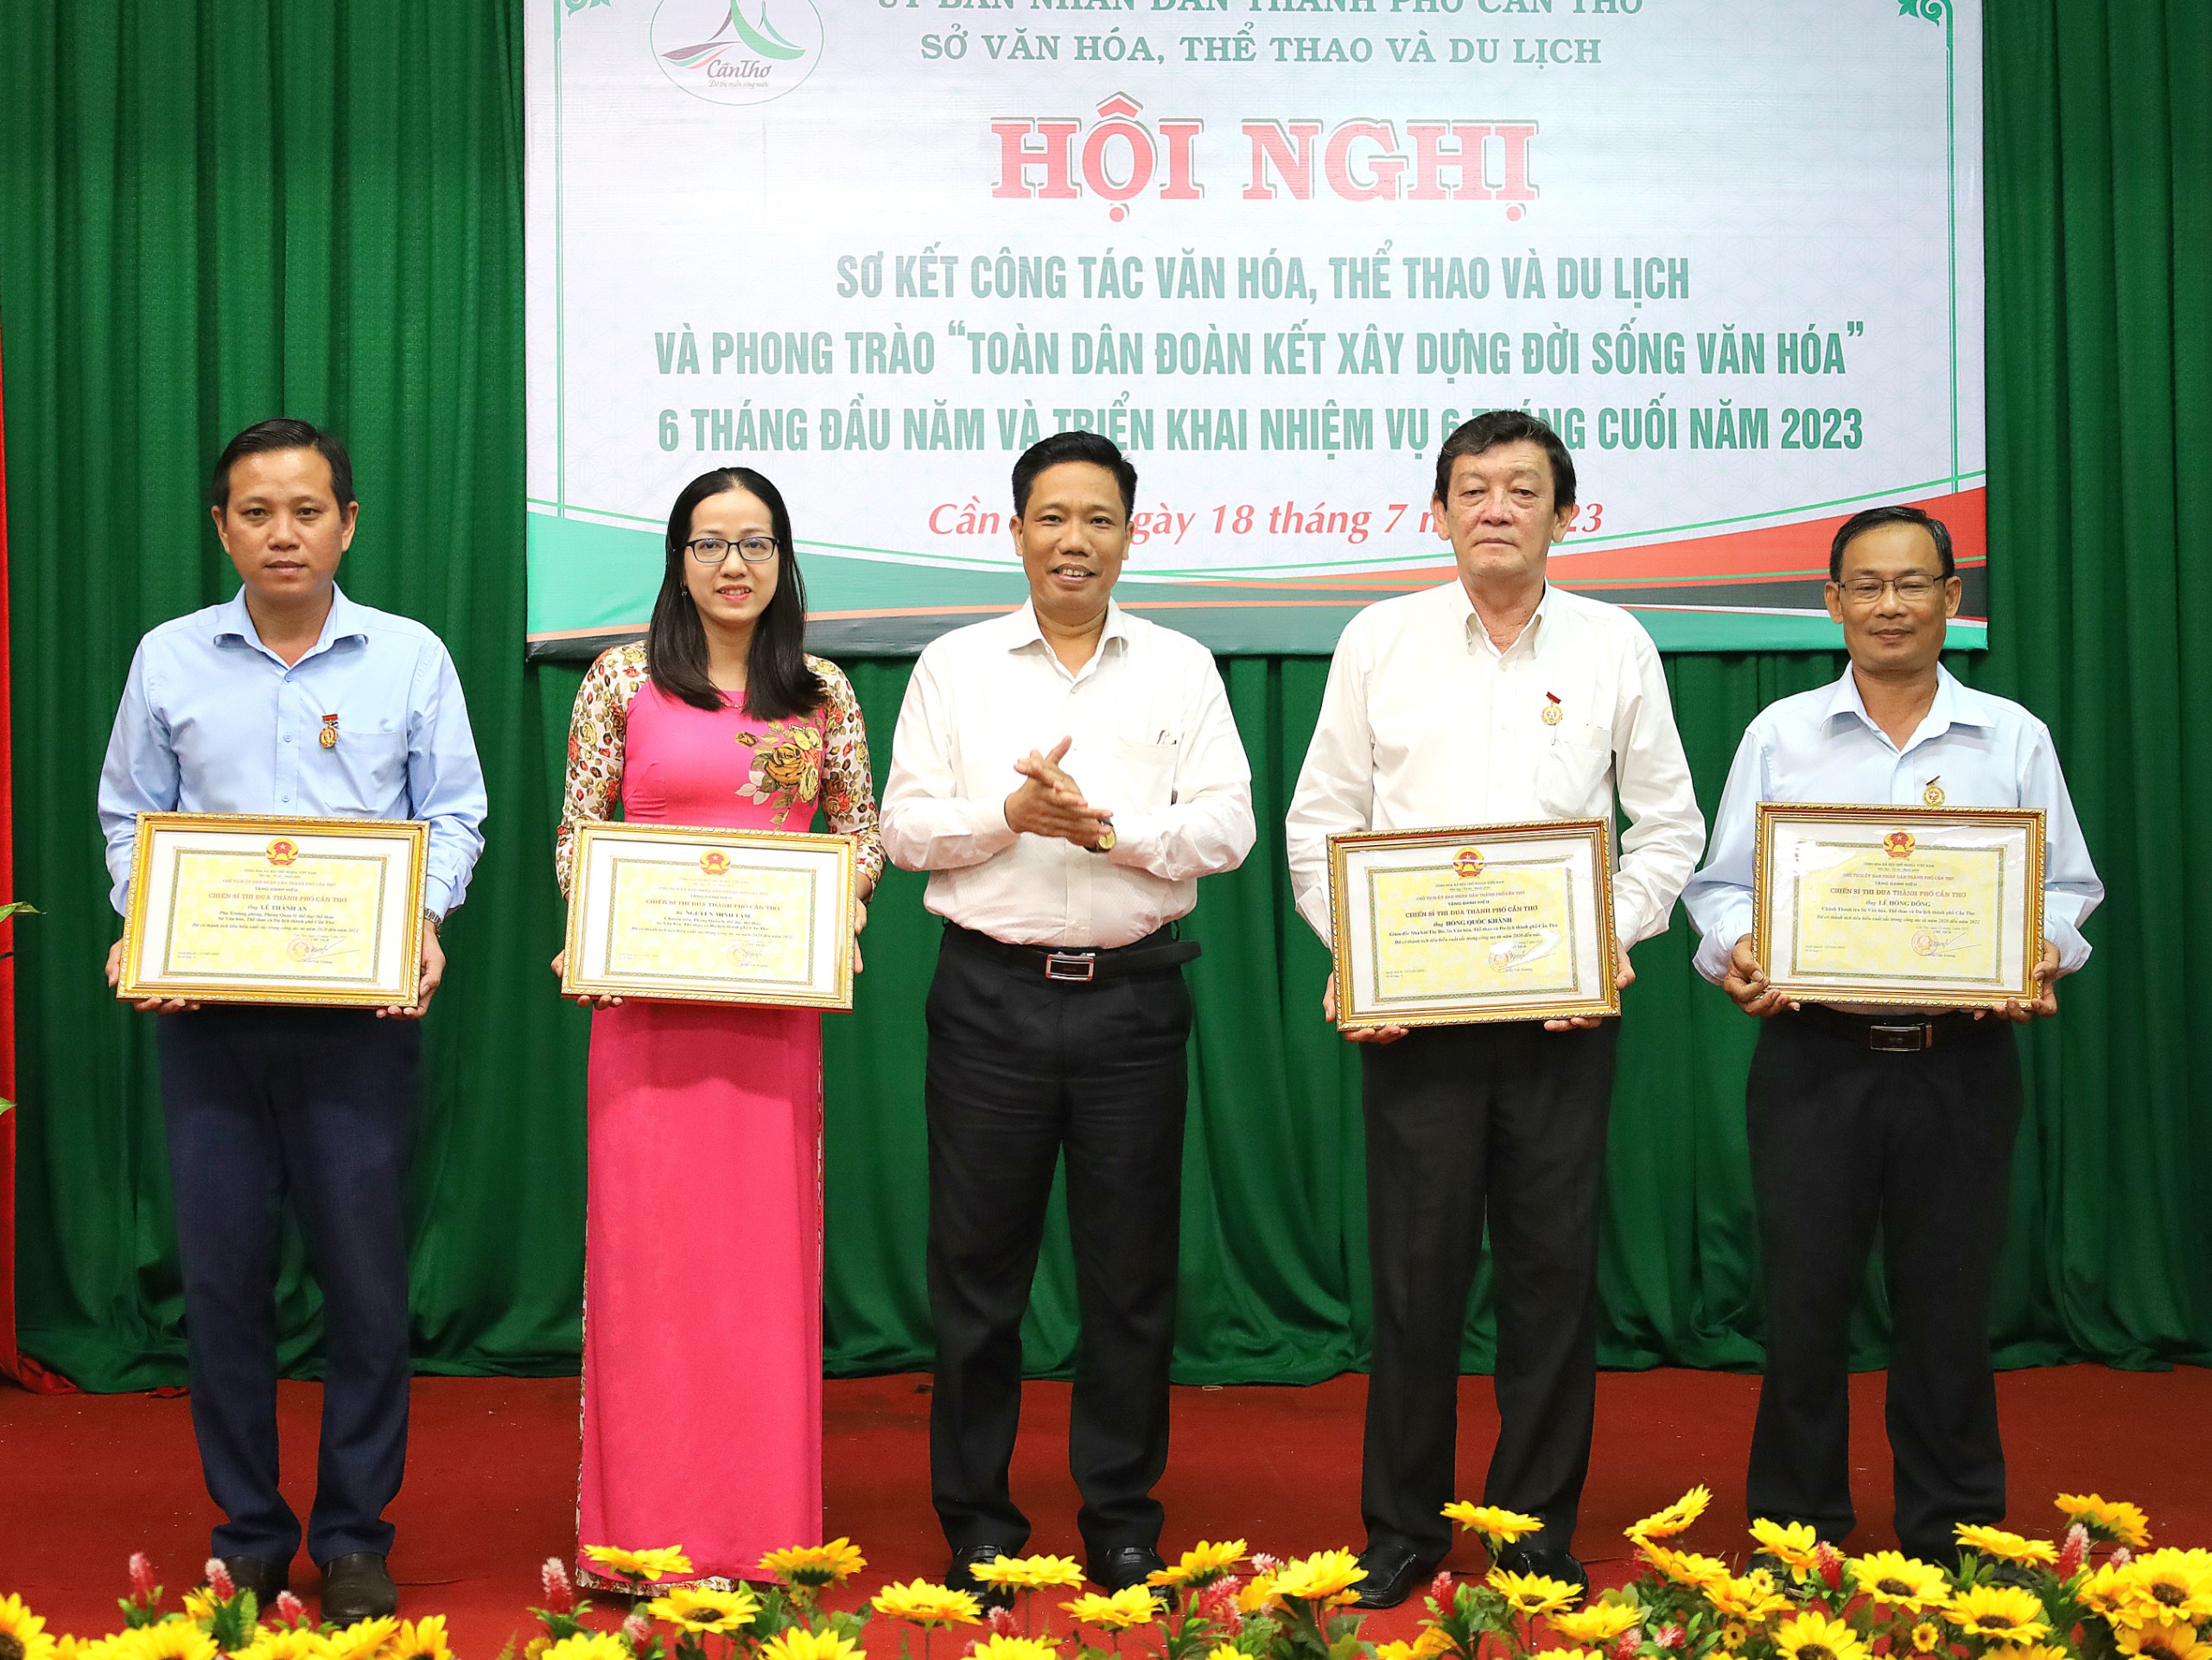 Ông Nguyễn Thực Hiện - Phó Chủ tịch UBND TP. Cần Thơ trao danh hiệu Chiến sĩ thi đua cấp thành phố cho 4 cá nhân.